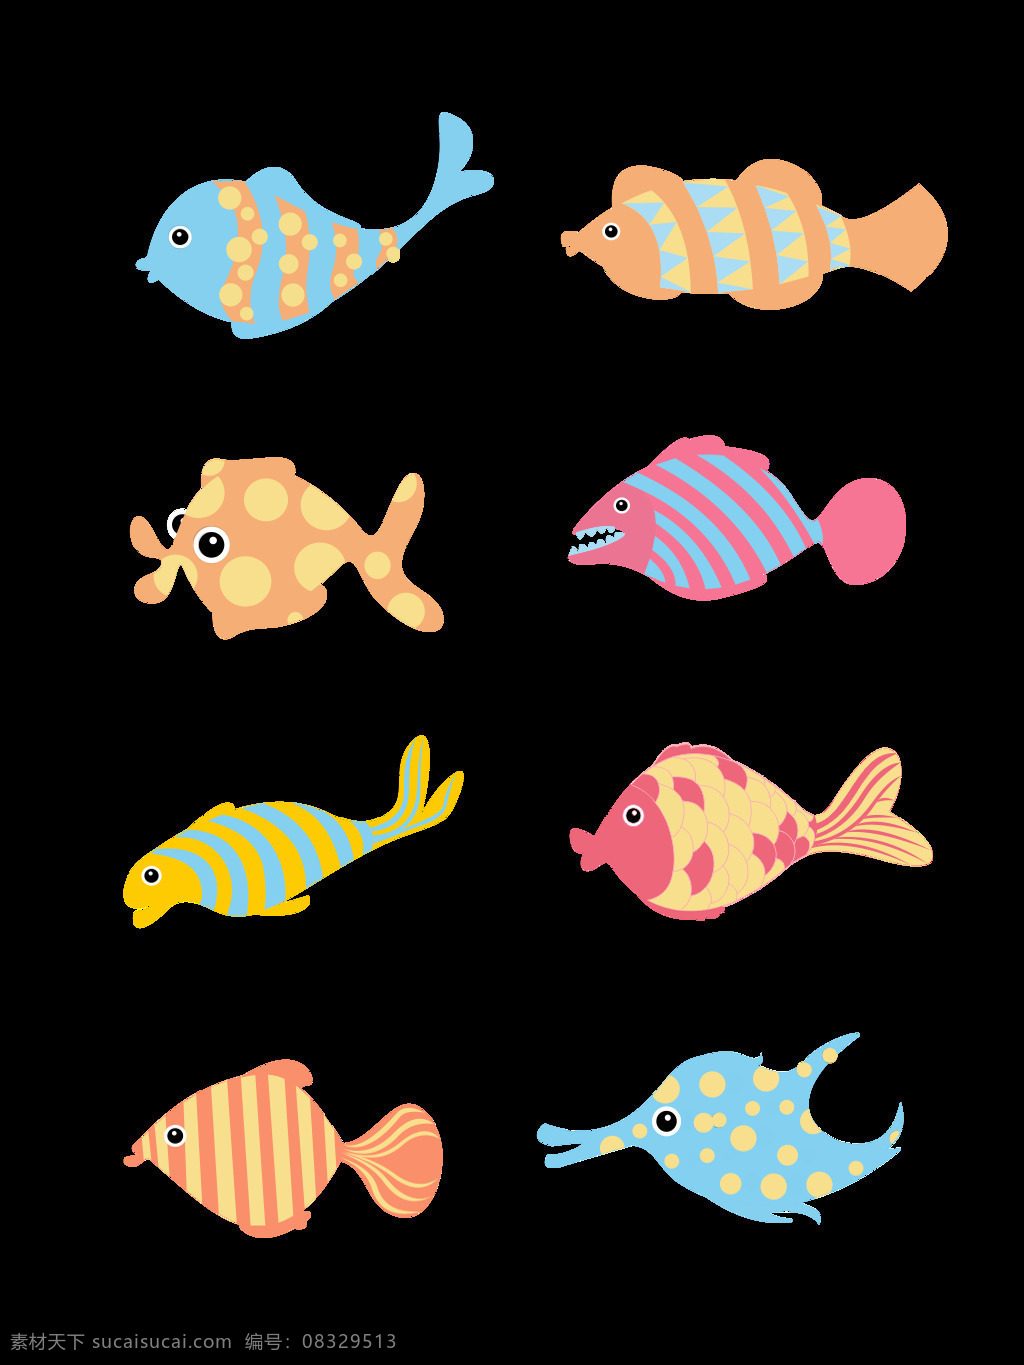 海底 动物 卡通 可爱 鱼 元素 套 图 海底动物 元素设计 卡通可爱 小清新 多色